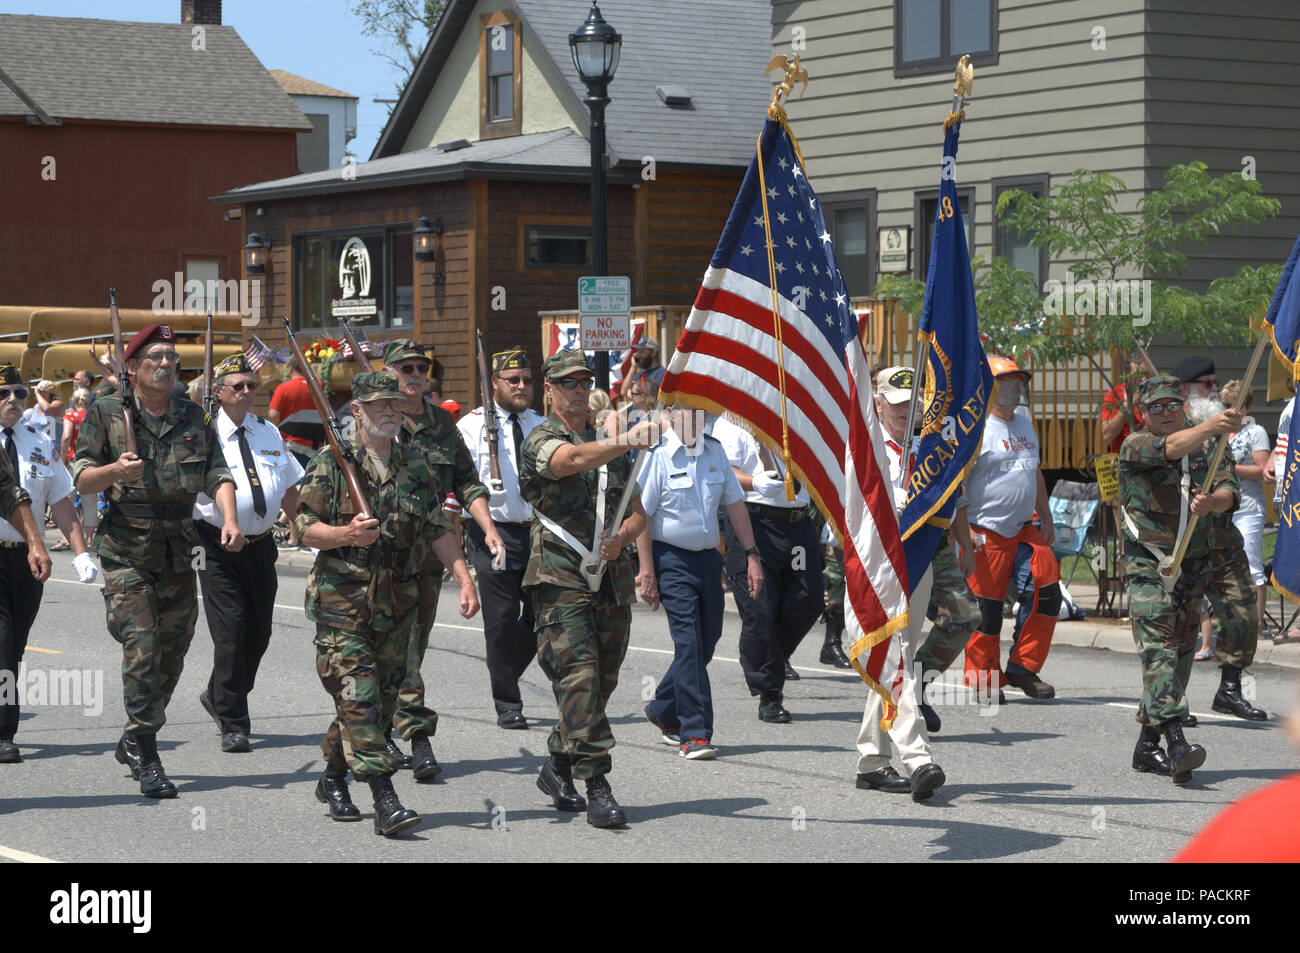 Des guerres locales d'anciens combattants marchant en Juillet 4e parade à Ely Minnesota Banque D'Images